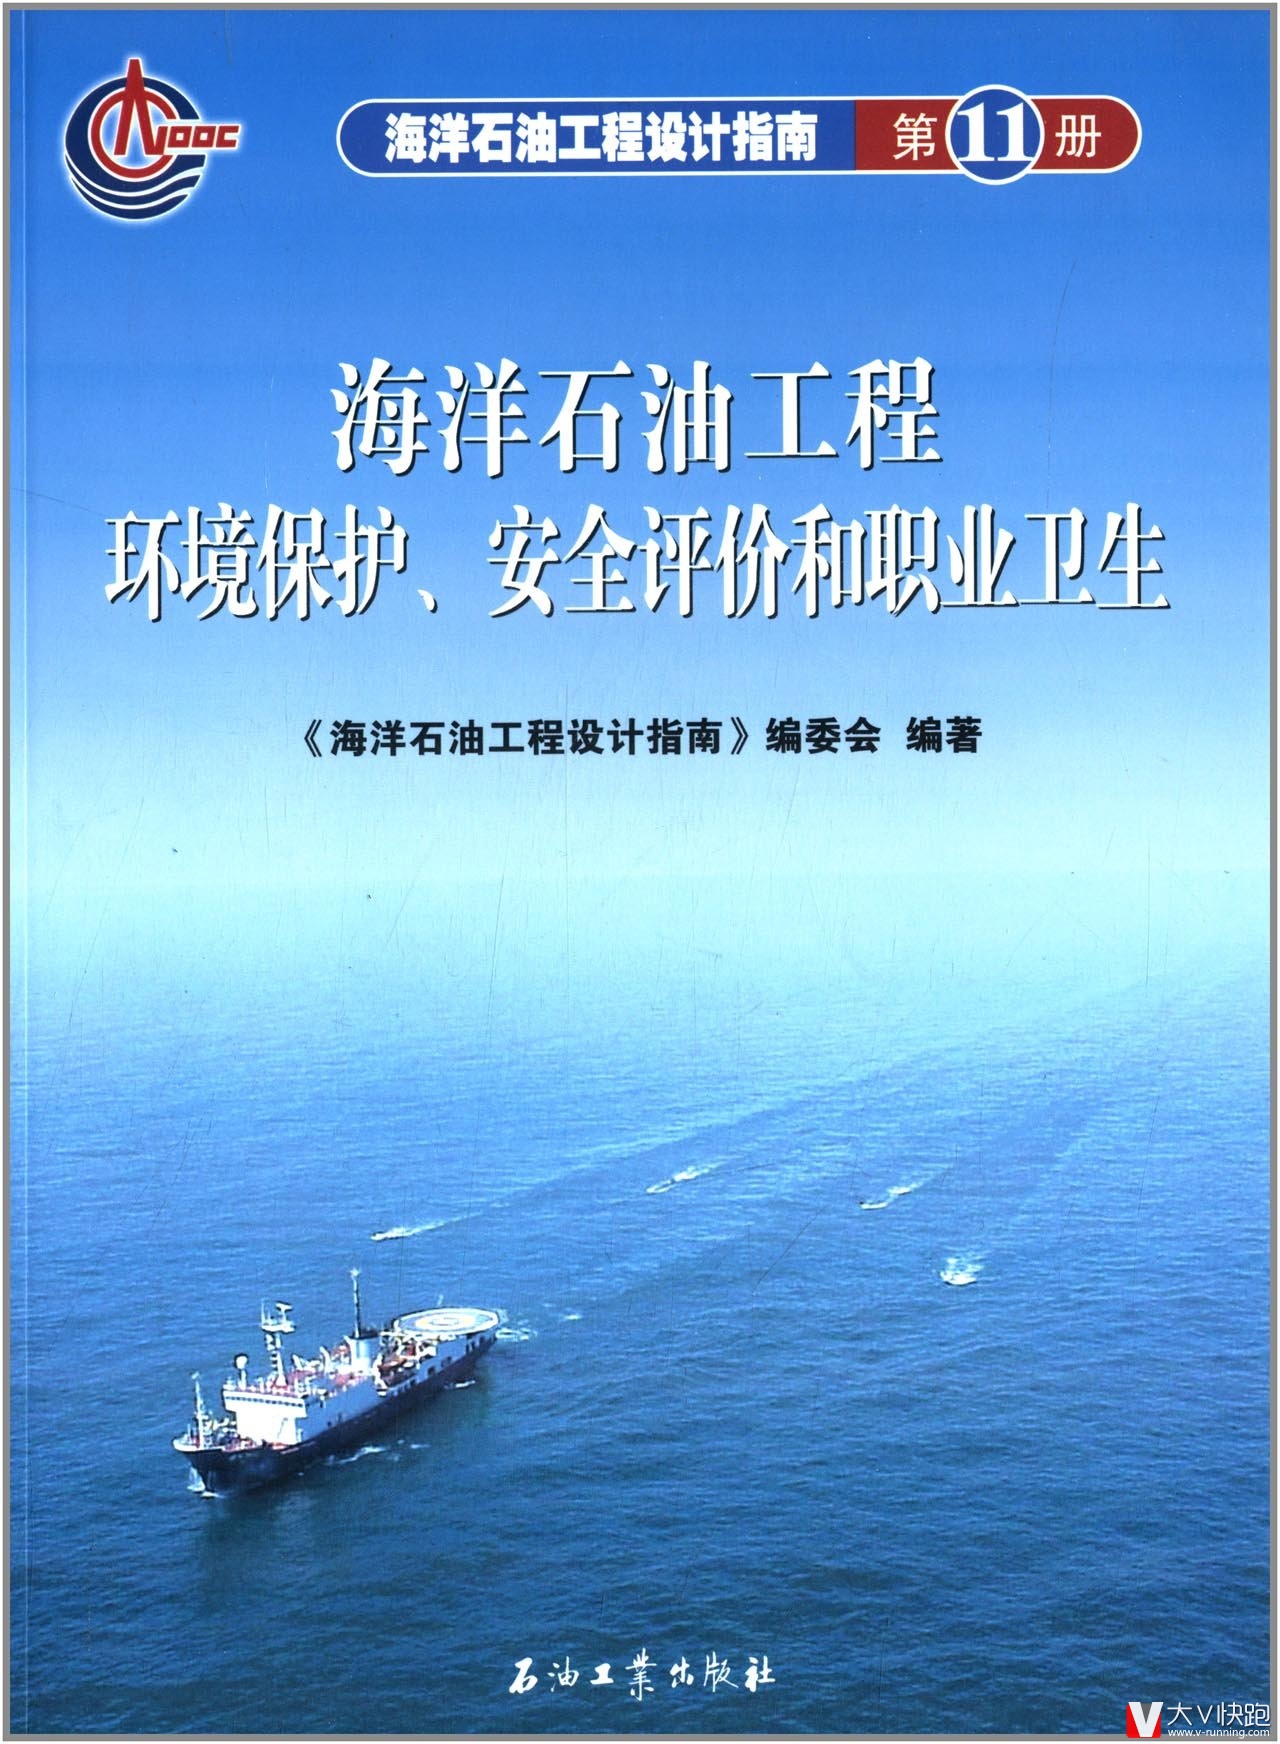 海洋石油工程环境保护安全评价和职业卫生海洋石油工程设计指南第11册